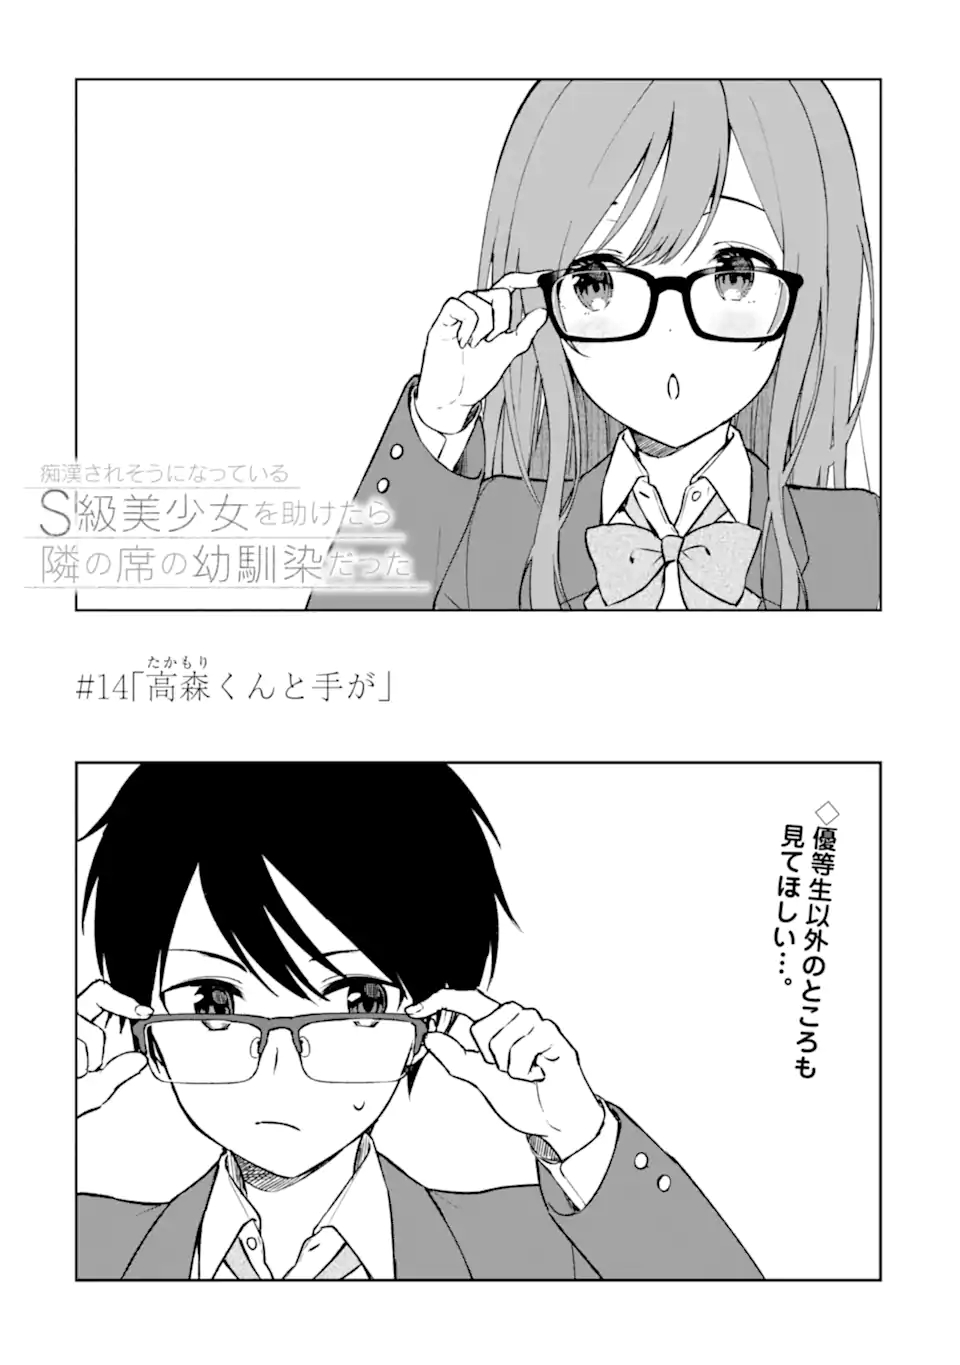 Read Roku De Nashi Majutsu Koushi To Kinki Kyouten Manga on Mangakakalot